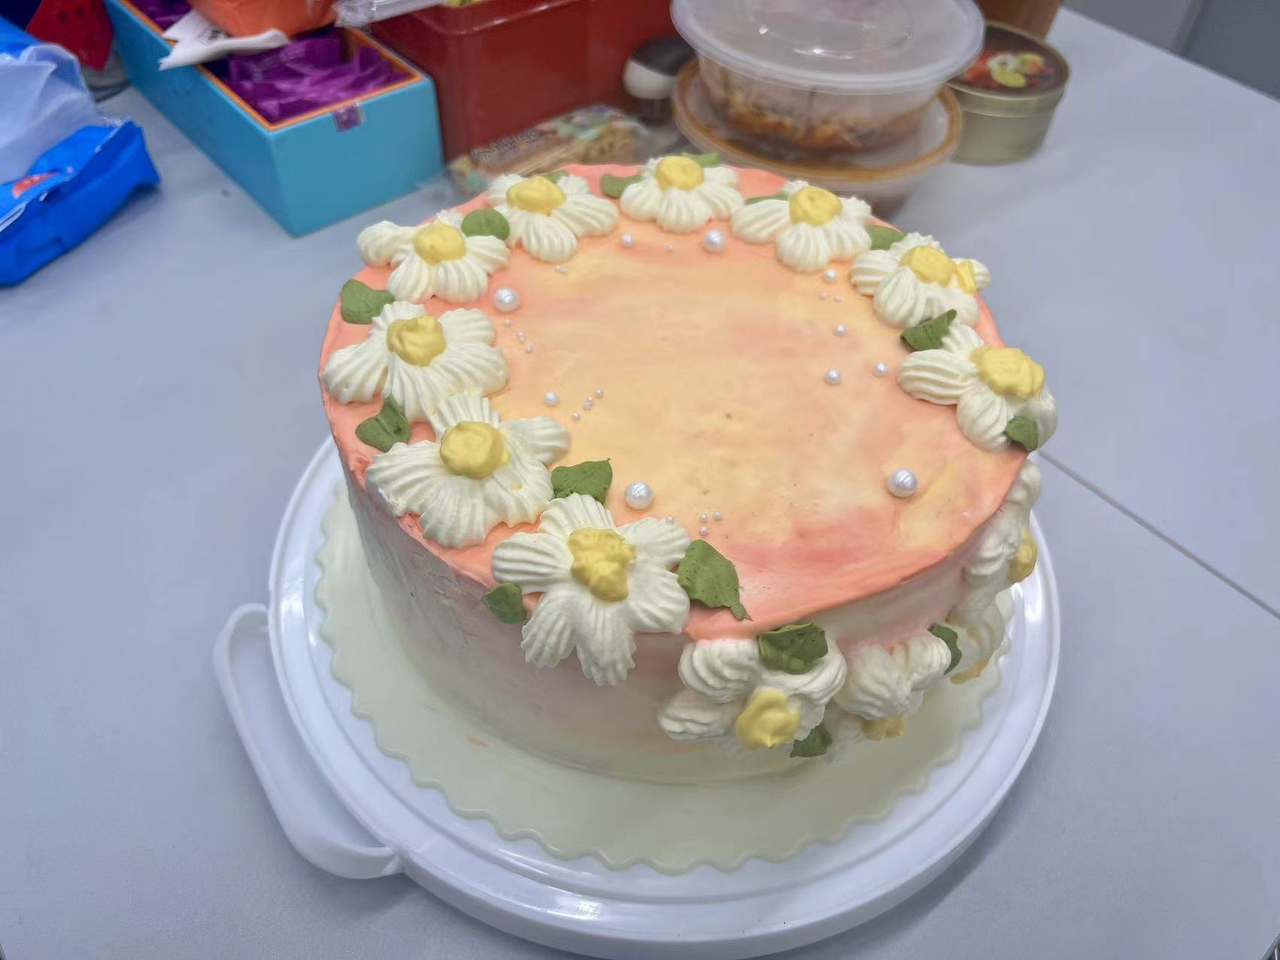 简约裱花蛋糕